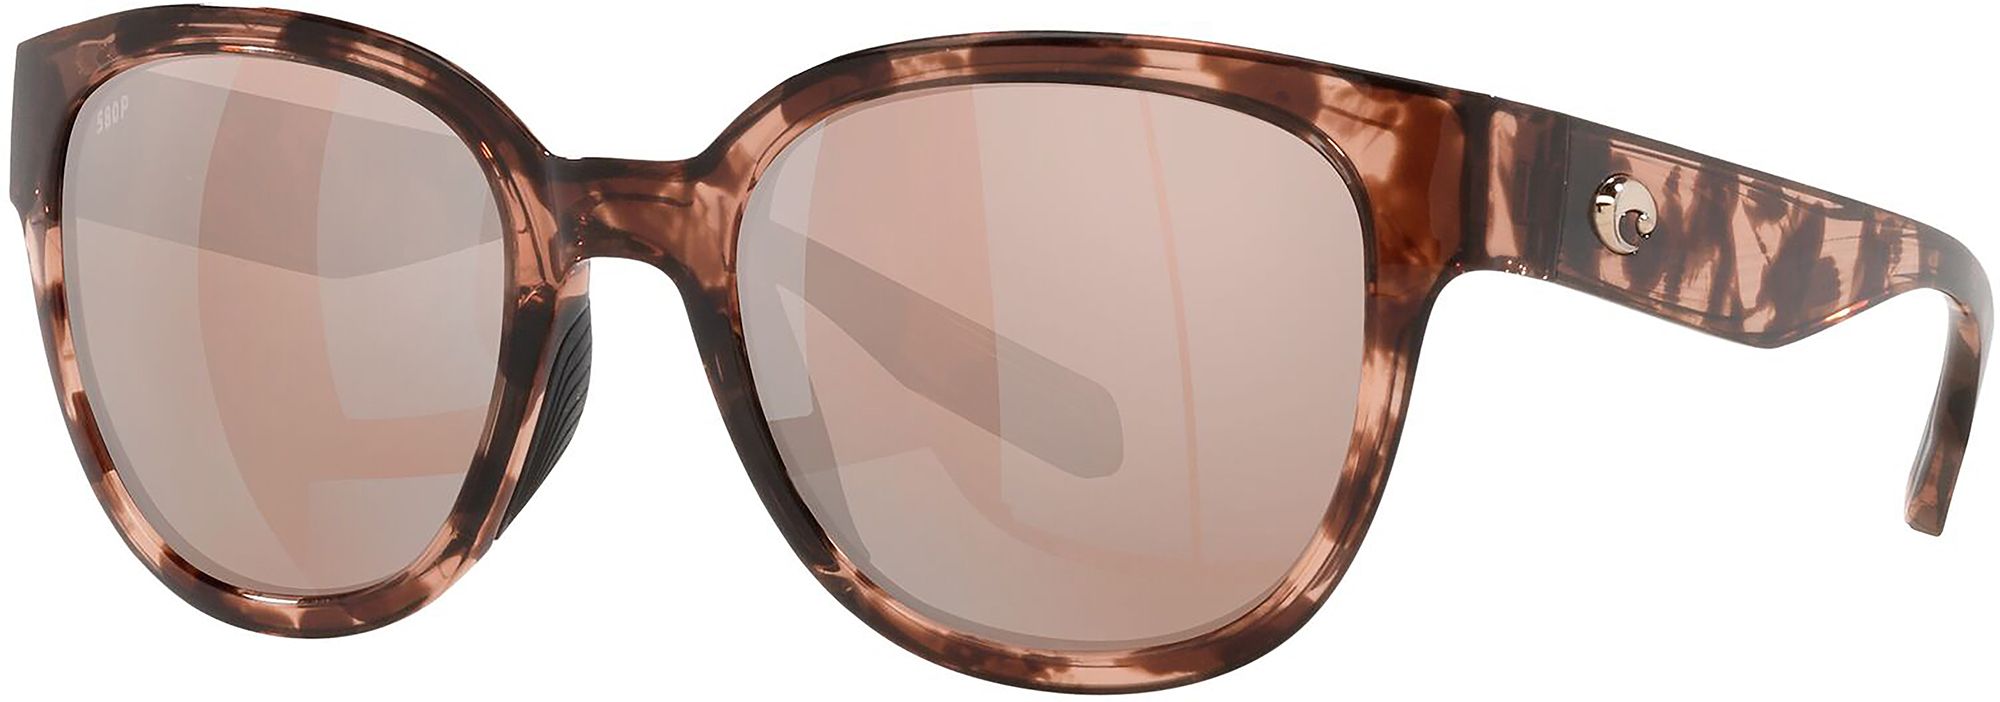 Photos - Sunglasses Costa Del Mar Salina , Men's, Tortoise/Copper Silver Mirror | Fa 